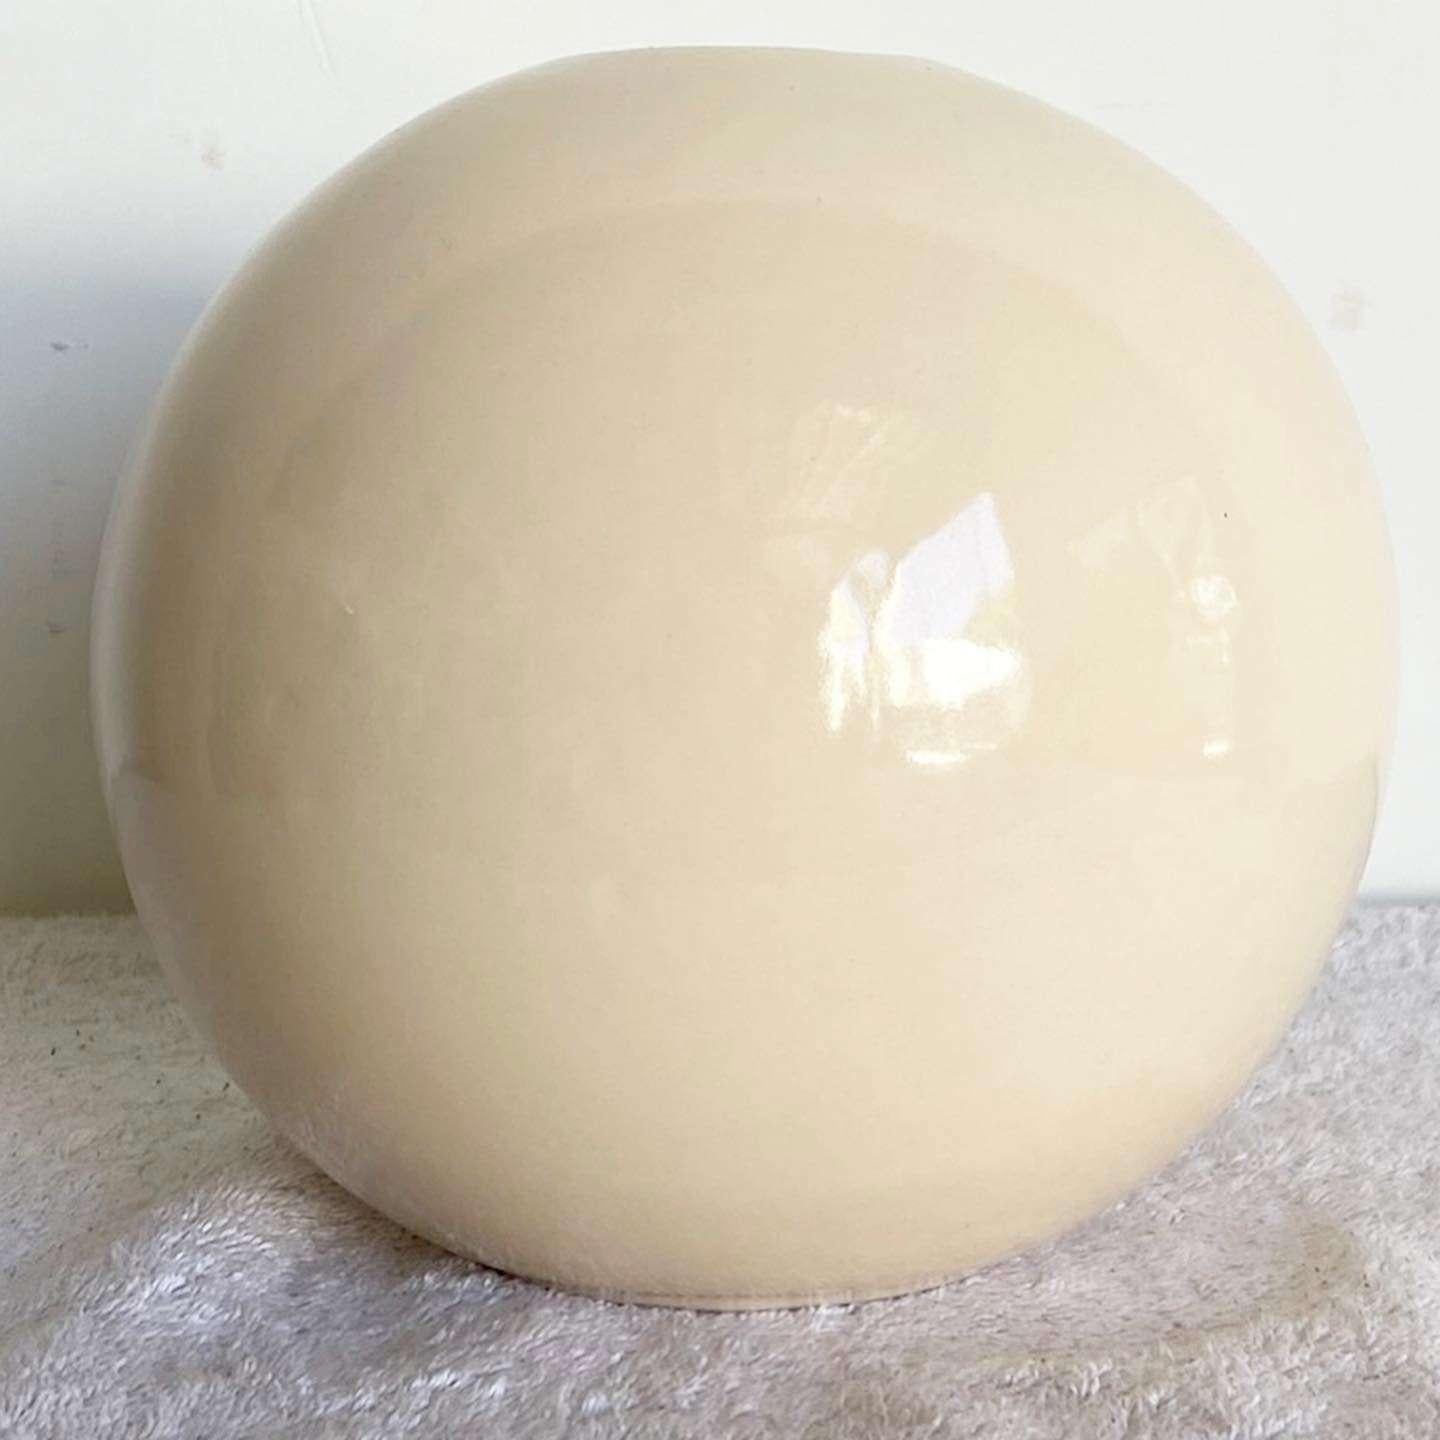 Incredible vintage postmodern ceramic vase. Displays a wonderful spherical shape.
